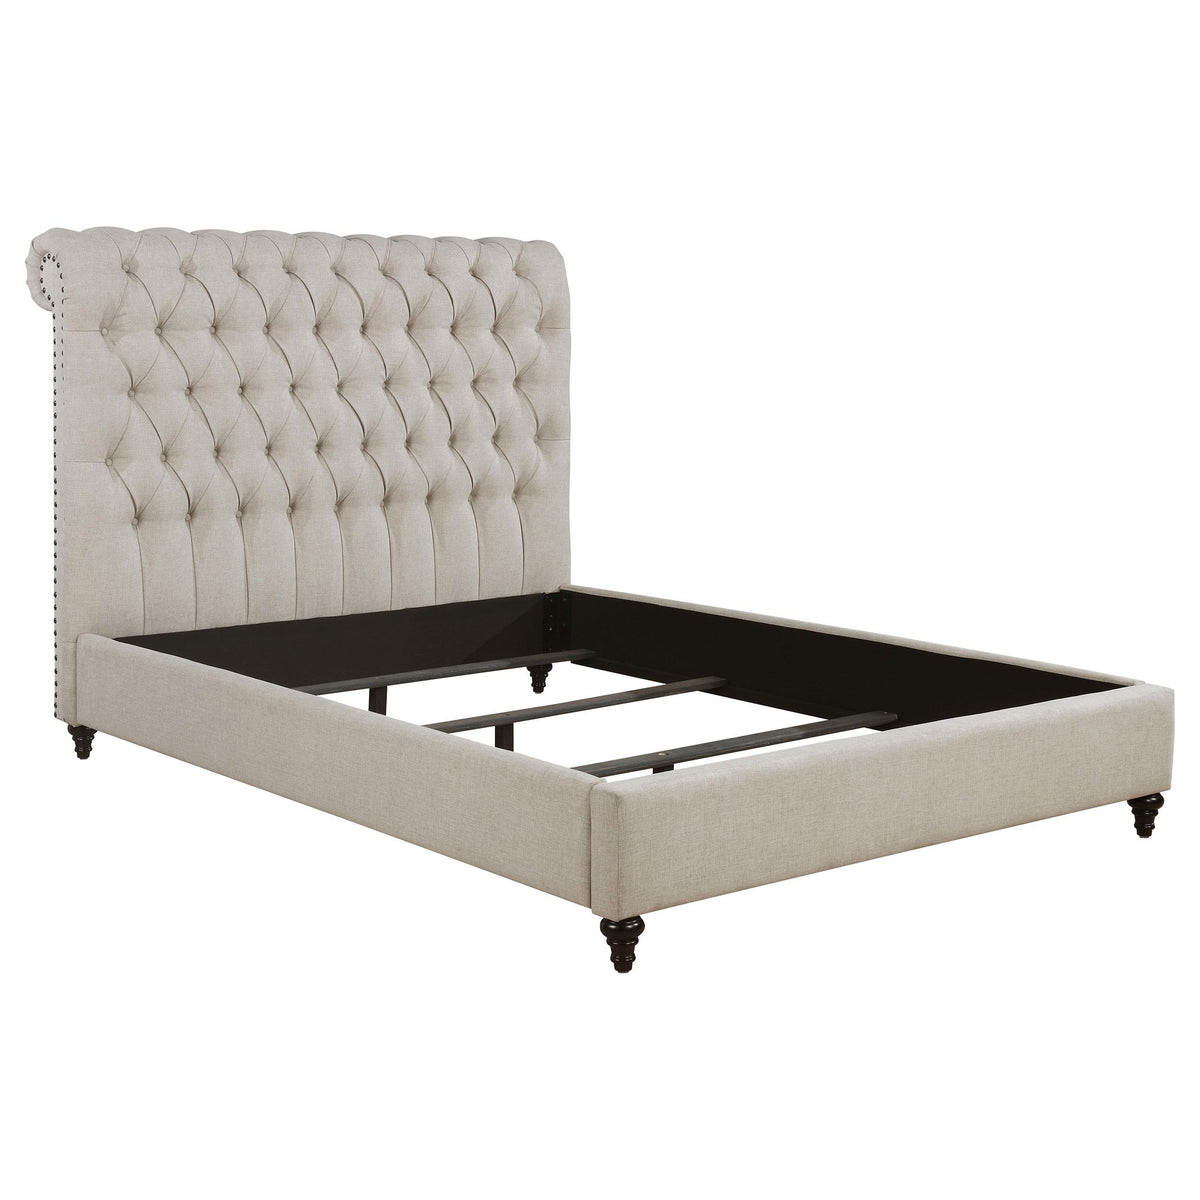 Devon Tufted Upholstered Eastern King Bed Beige  Half Price Furniture